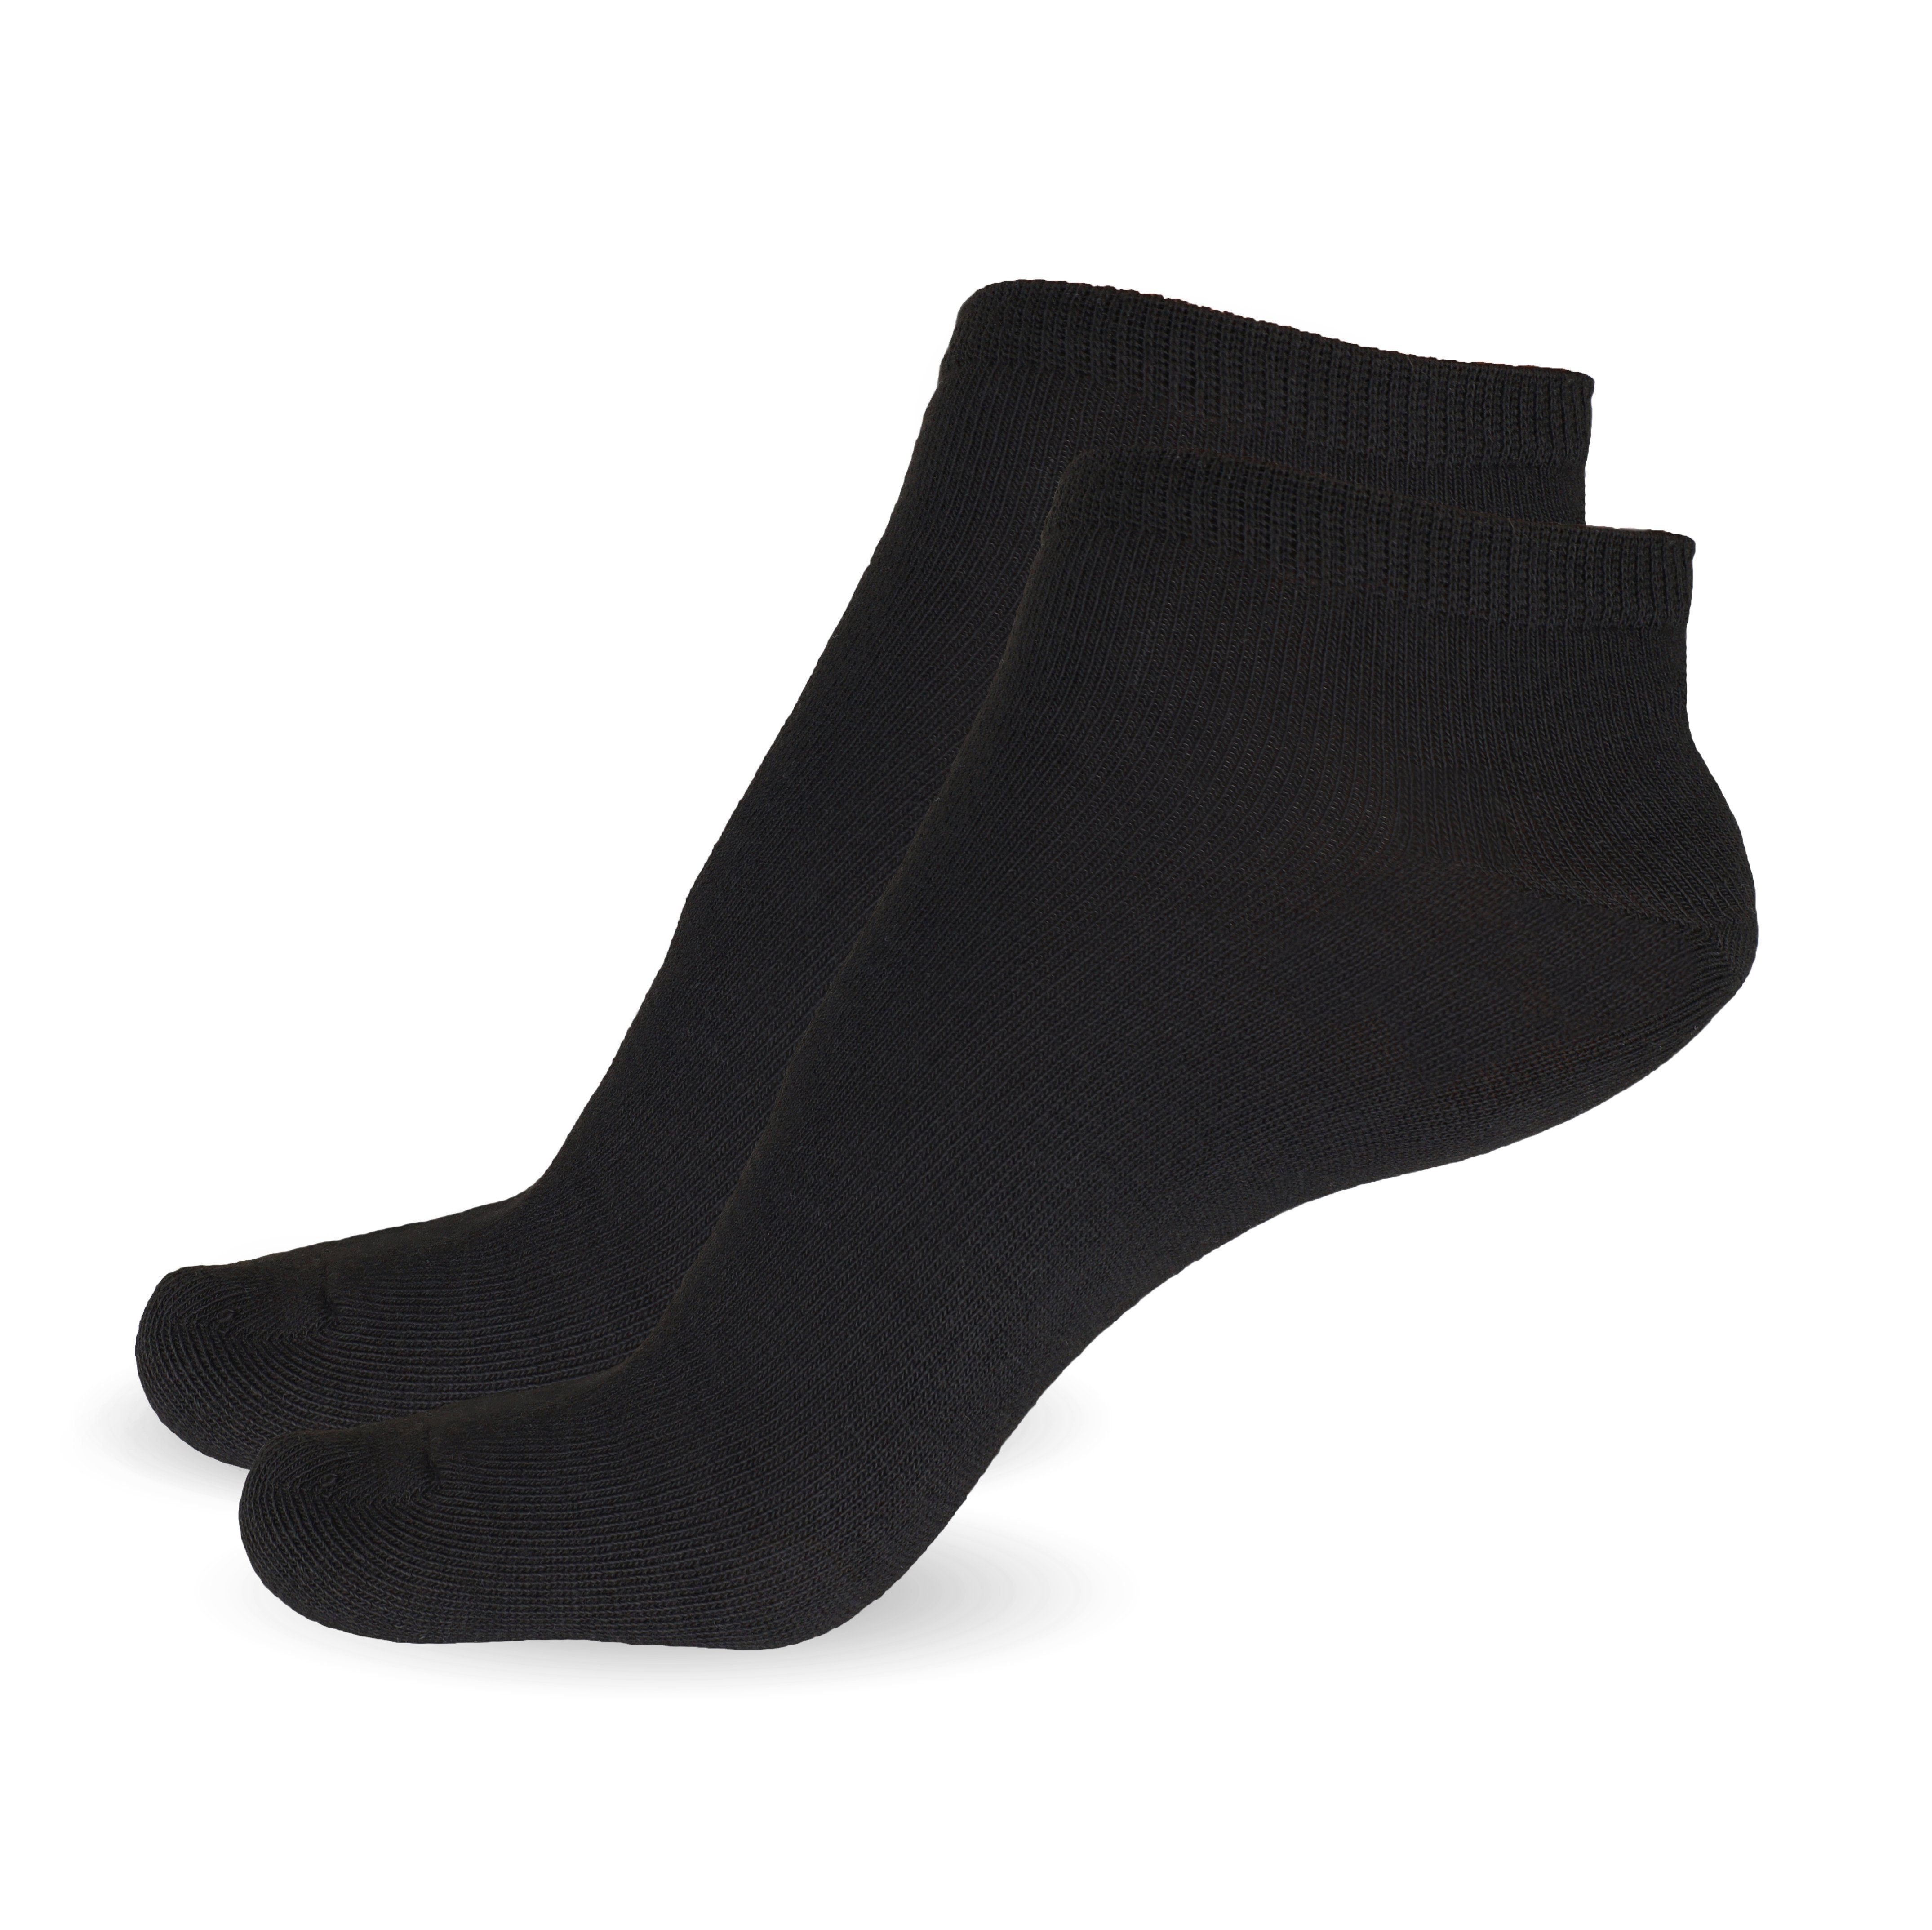 SO.I Freizeitsocken Sneaker Socken 5x atmungsaktive Weiß Socken (Größen Paar) Herren Unisex + Baumwolle & Schwarz 35-46, Damen 5-20 5x aus